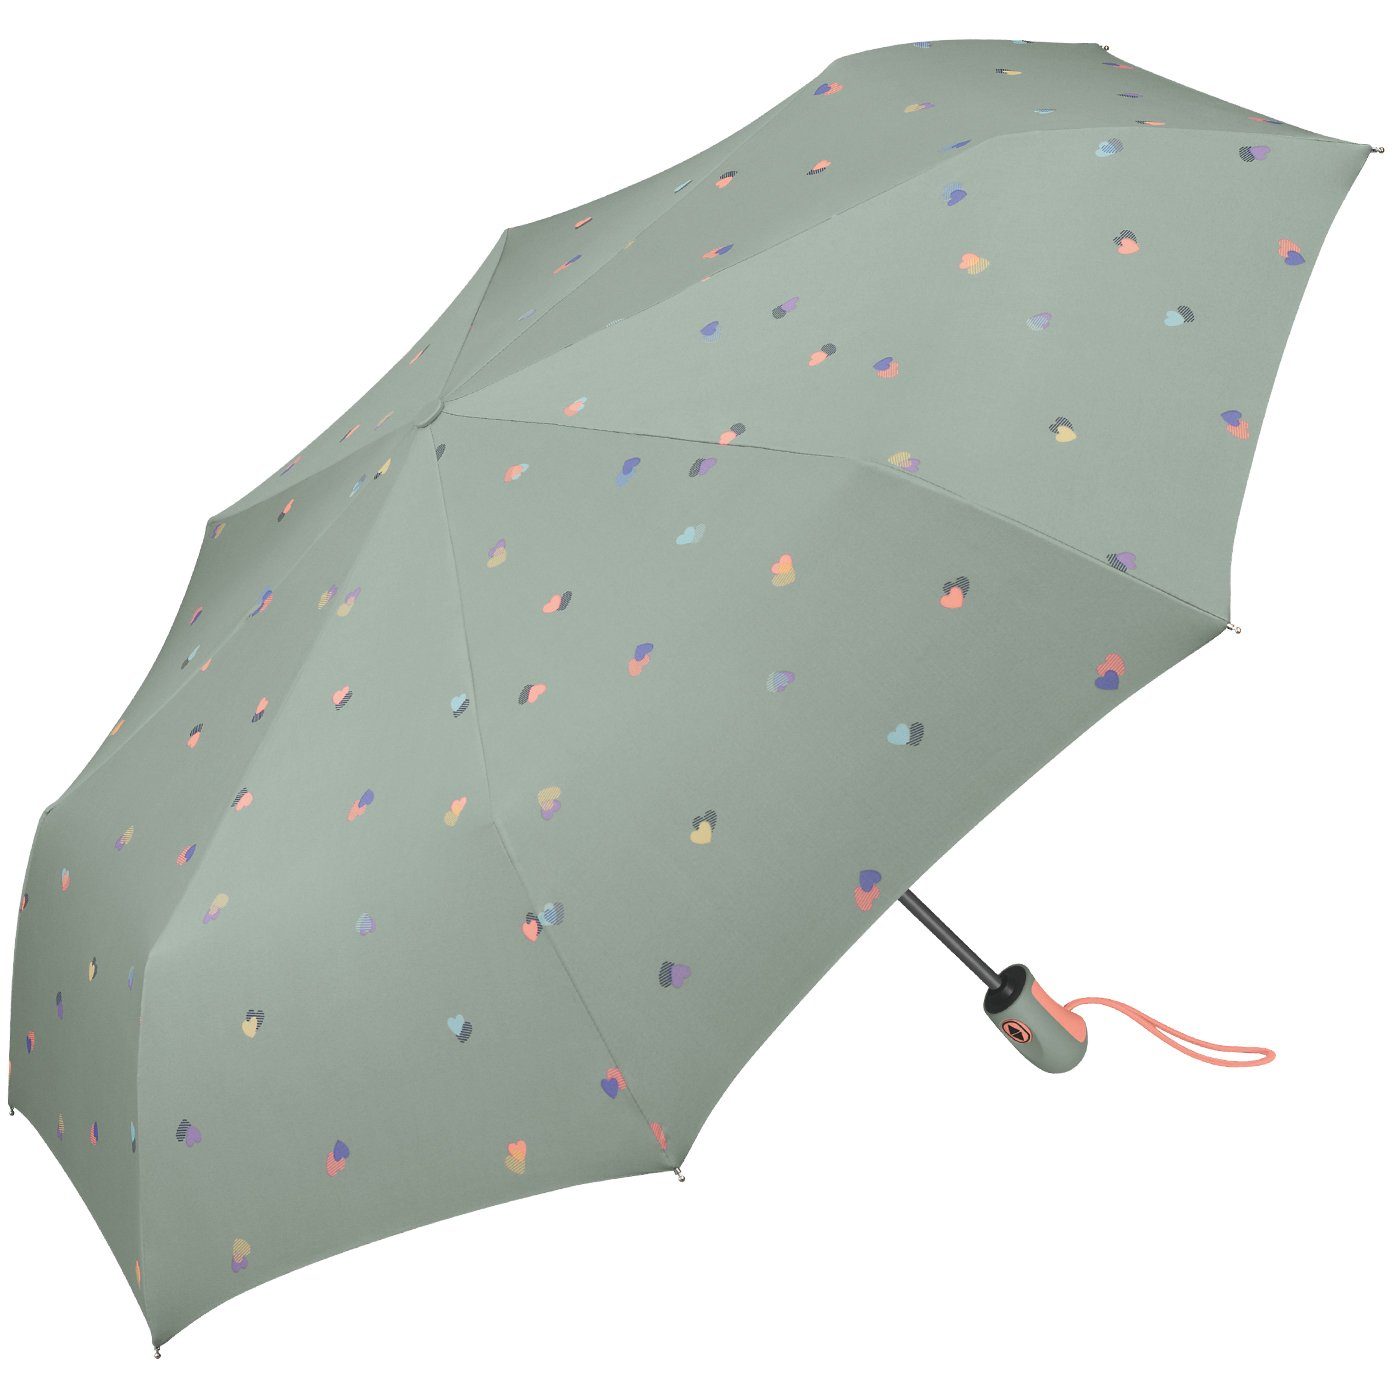 Schirm grau Esprit schöner für Auf-Zu - Herzen-Motiv mit Automatik, stabil, Taschenregenschirm Damen leicht mit